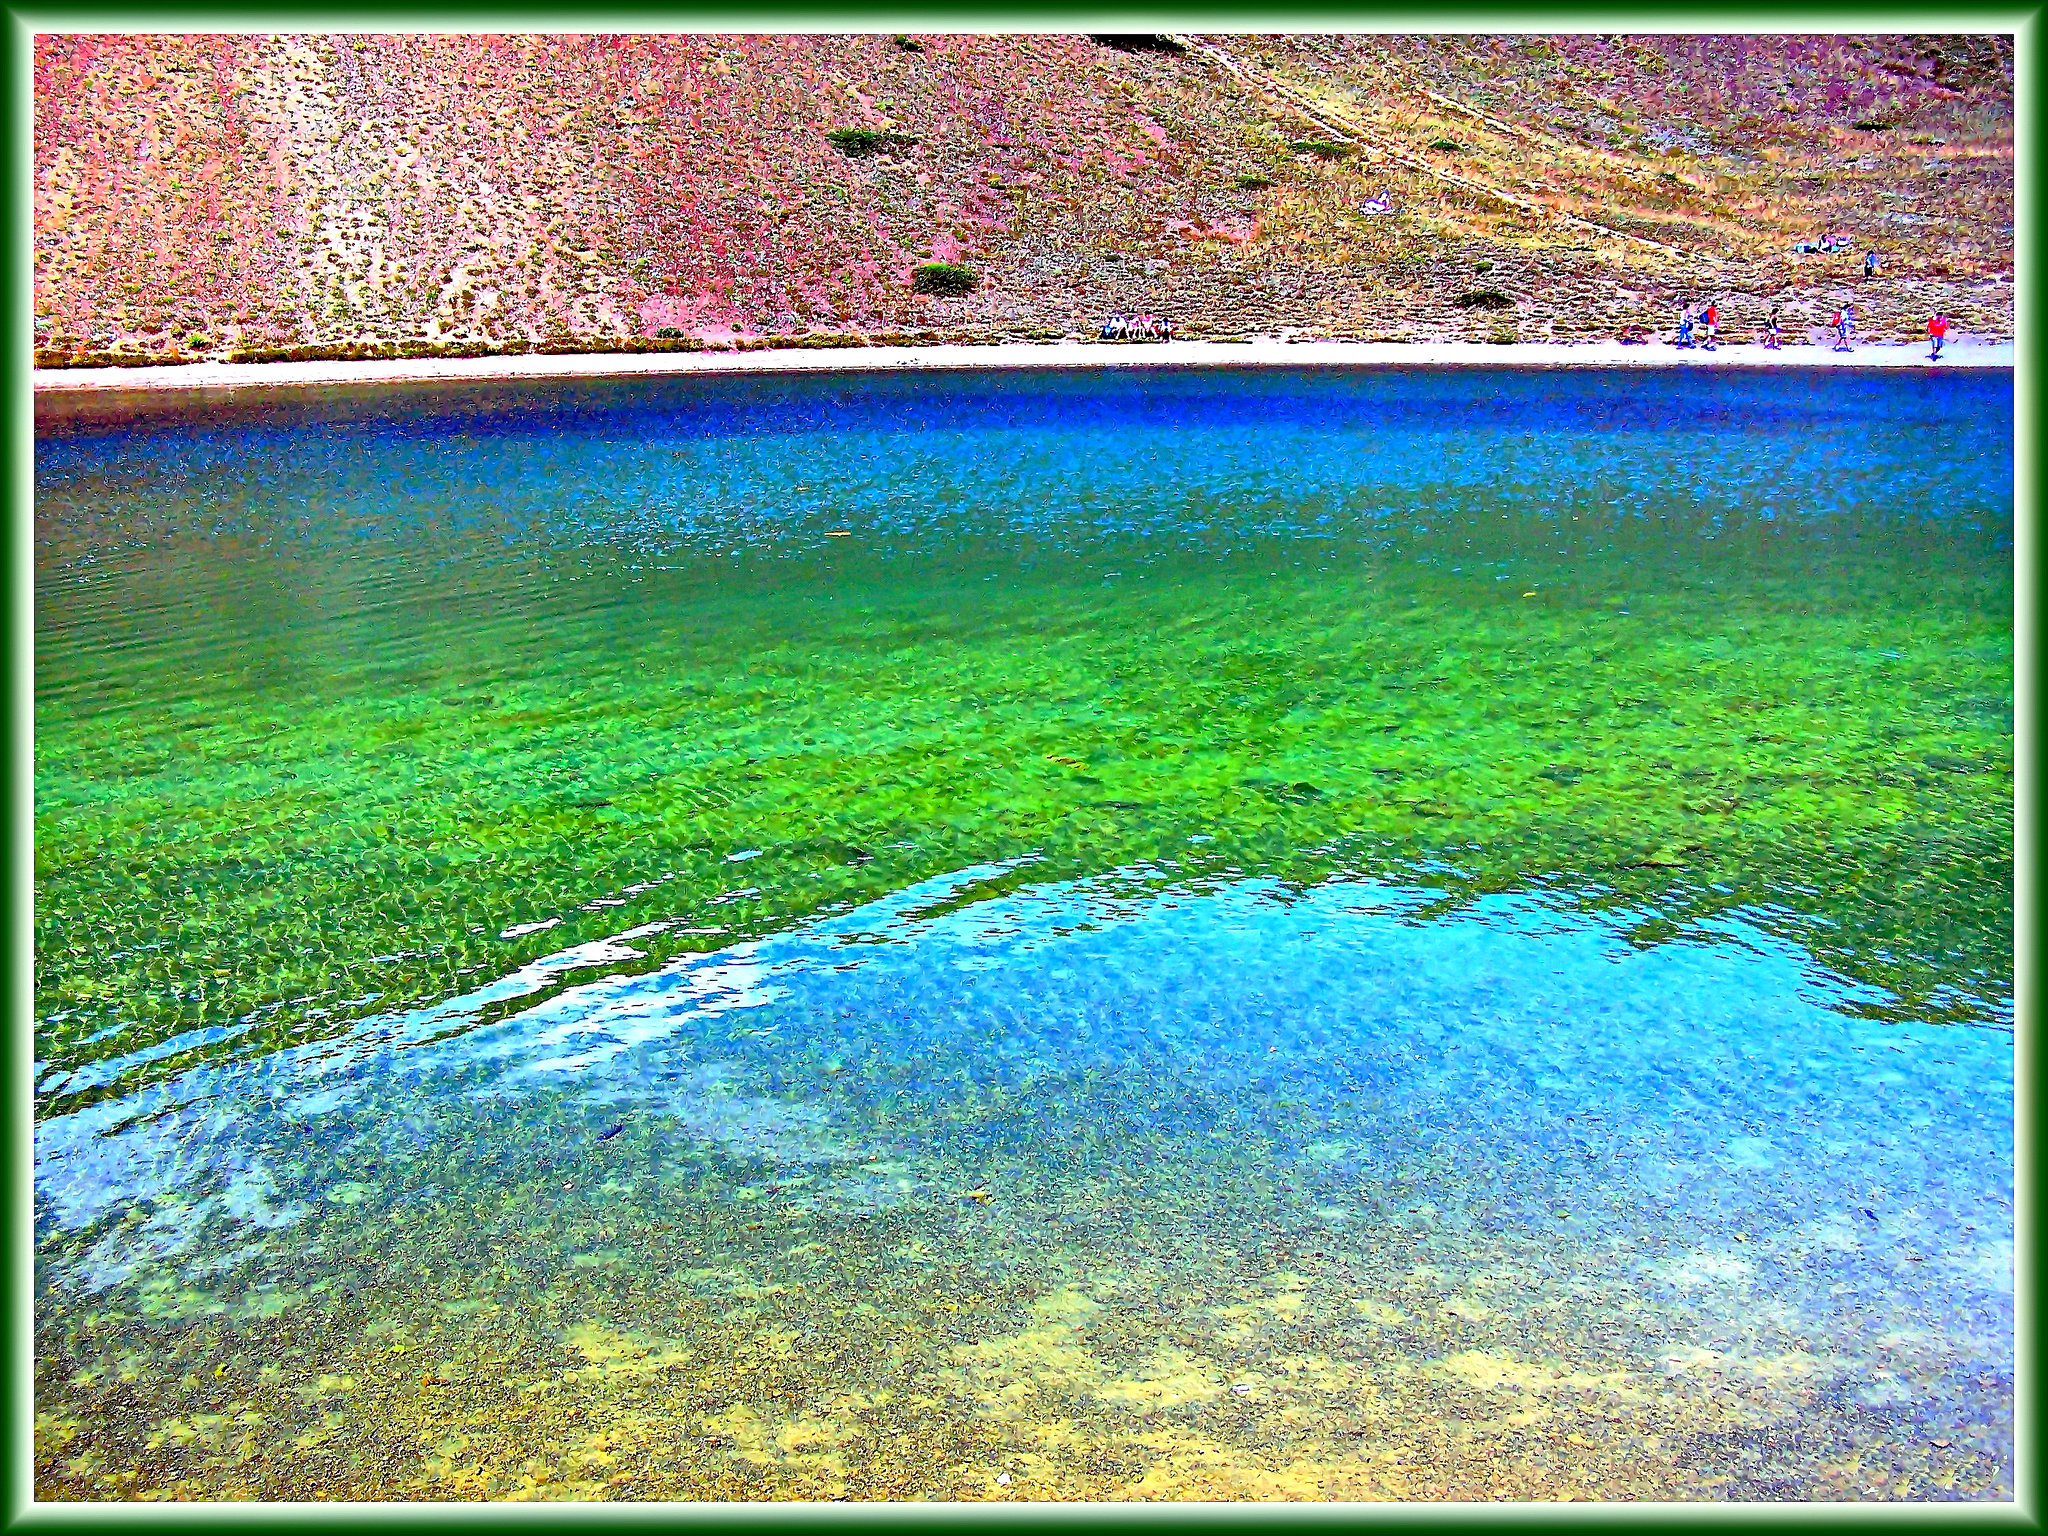 Lago Gignoux : ecco i sette colori del "lago dei 7 colori"